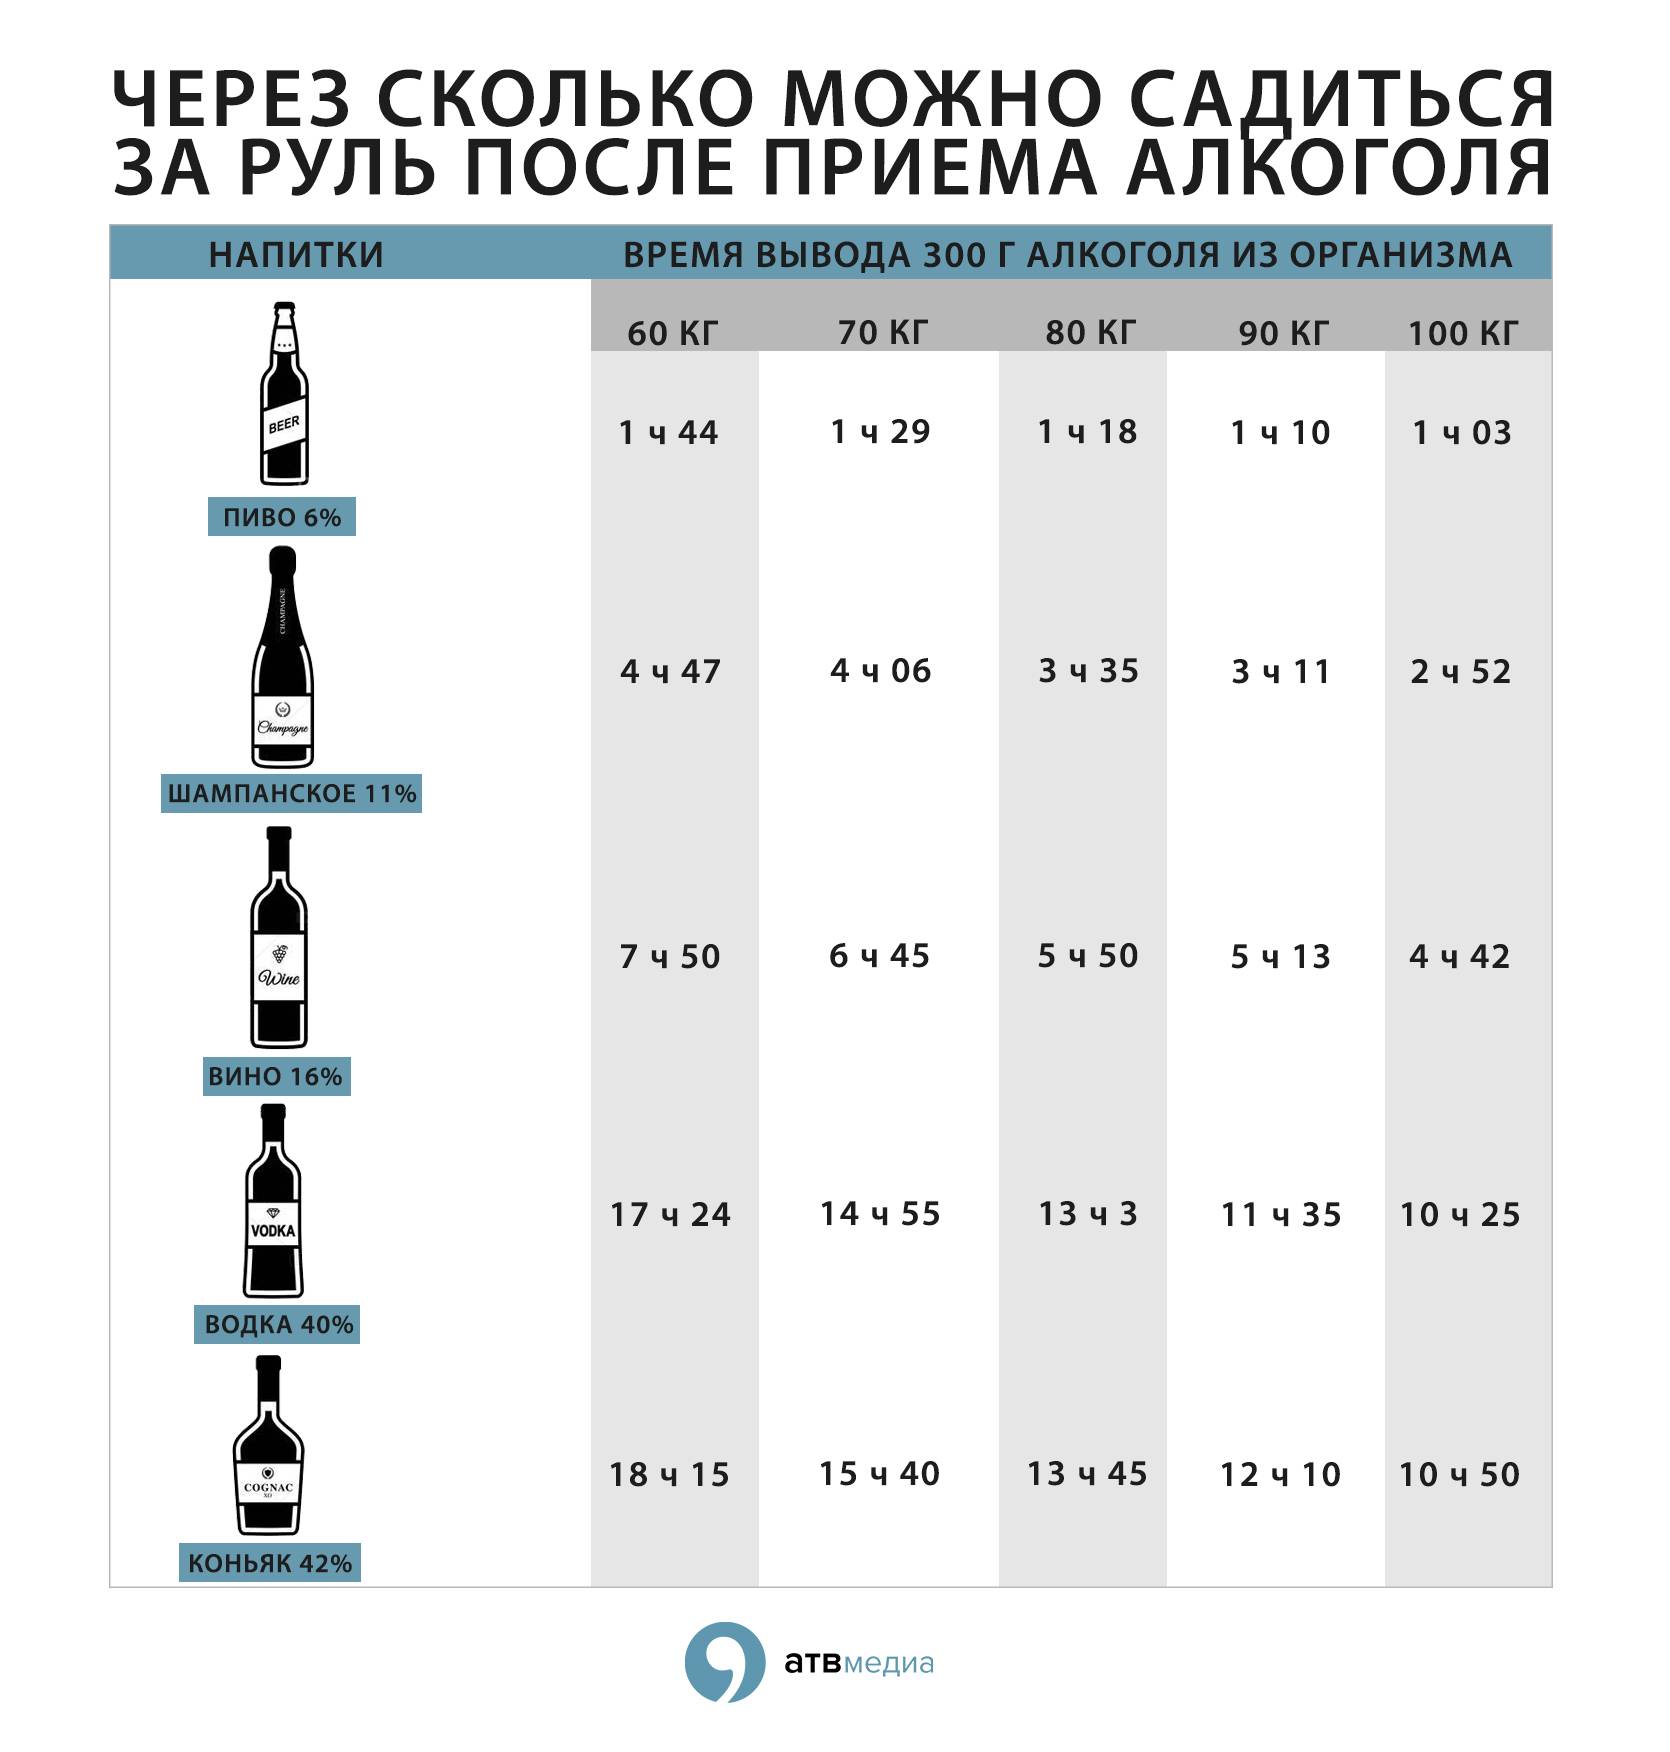 Какая допустимая норма алкоголя за рулем в промилле в россии: в крови водителя, таблица вывода, сколько